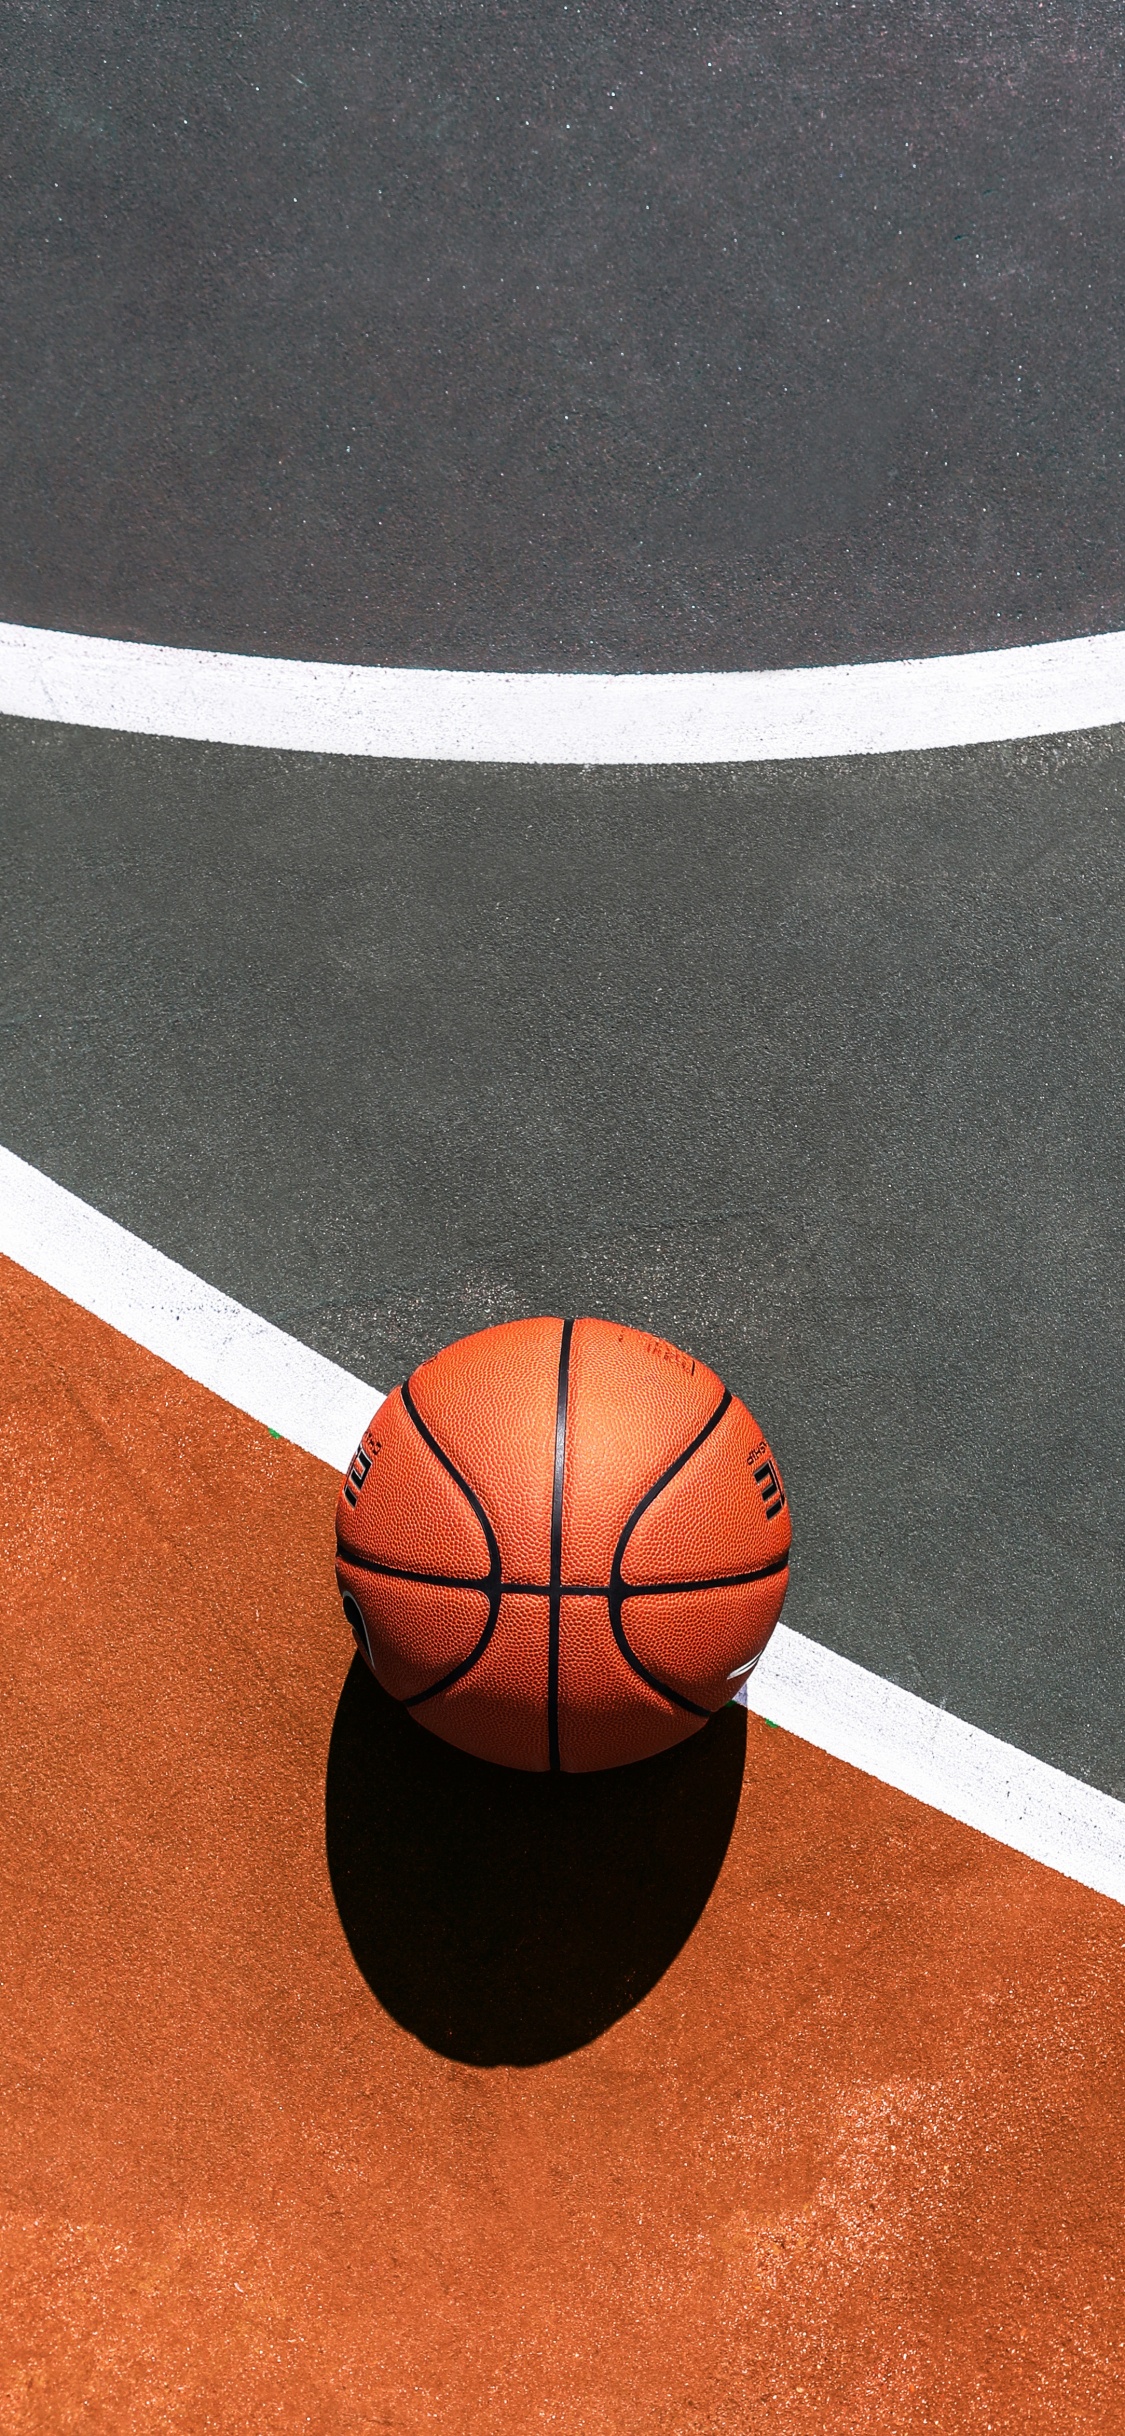 Basketball Auf Blau-weißem Basketballplatz. Wallpaper in 1125x2436 Resolution